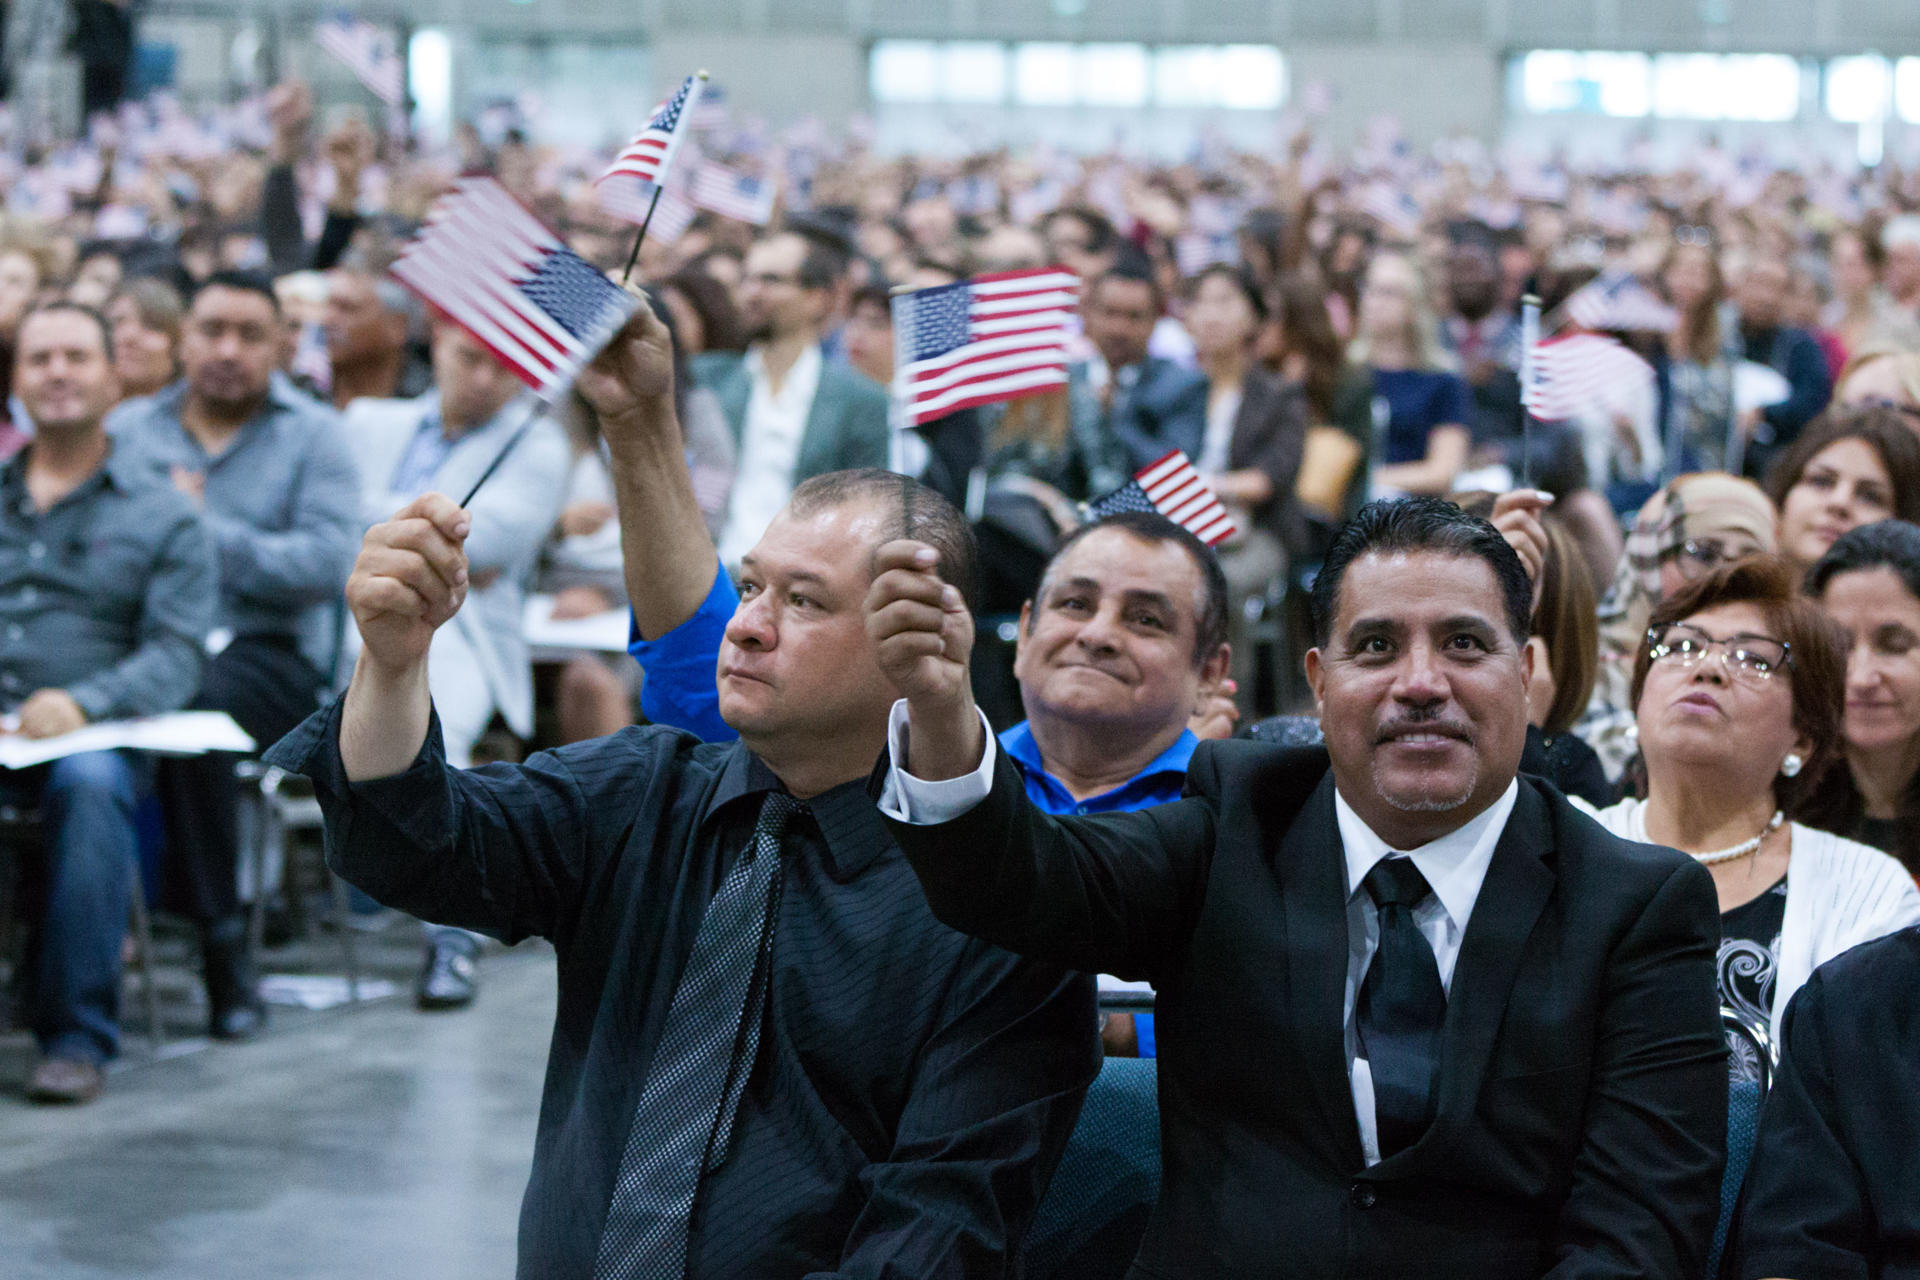 Cientos de personas asisten a la ceremonia de naturalización para convertirse en nuevos ciudadanos estadounidenses en Los Ángeles, California. Imagen de archivo. EFE/Felipe Chacón.
